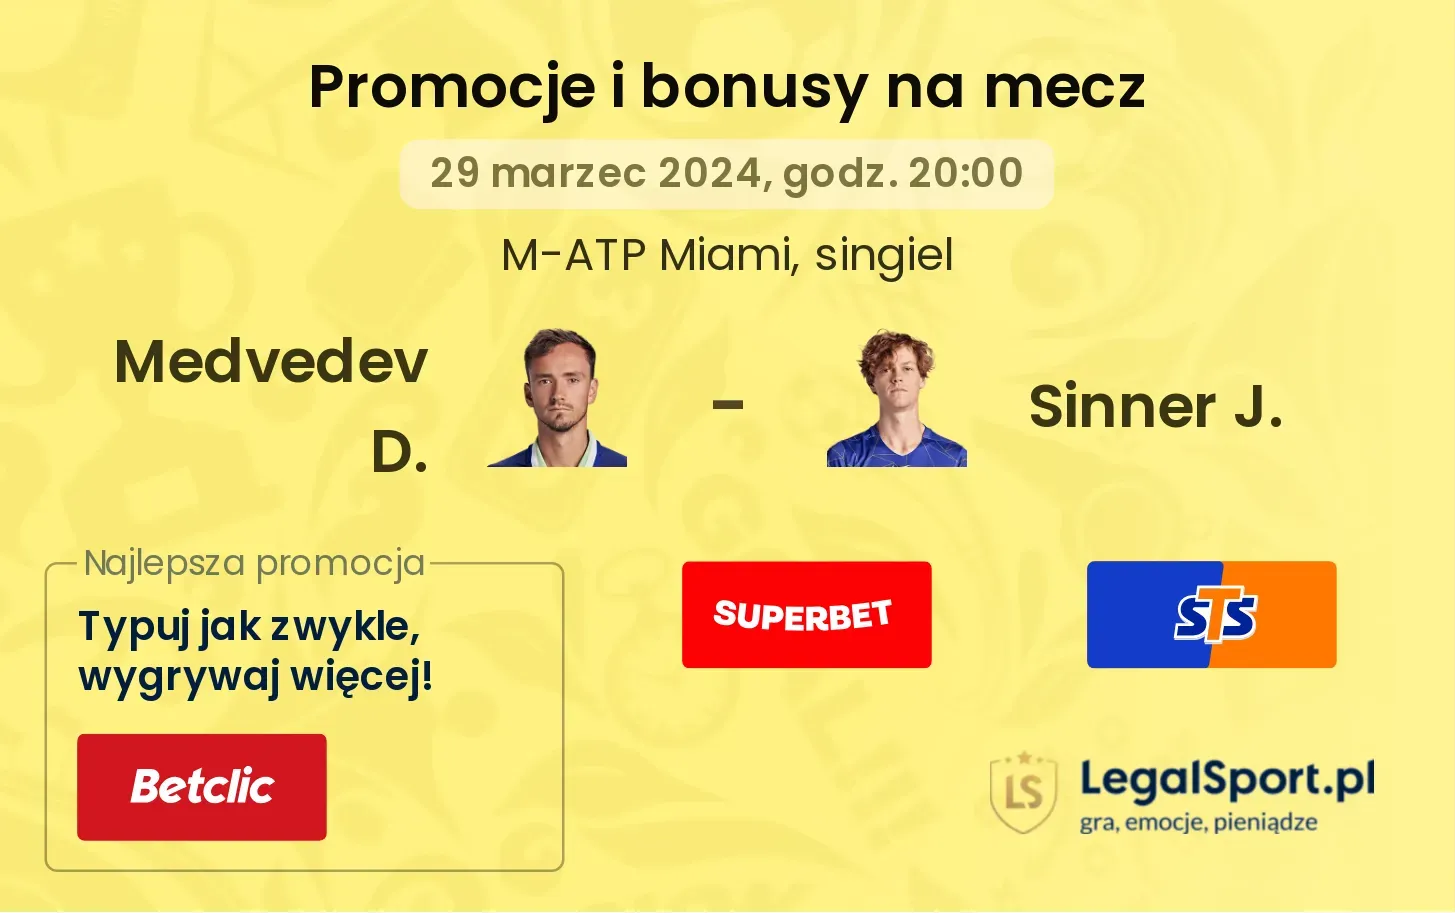 Medvedev D. - Sinner J. promocje bonusy na mecz